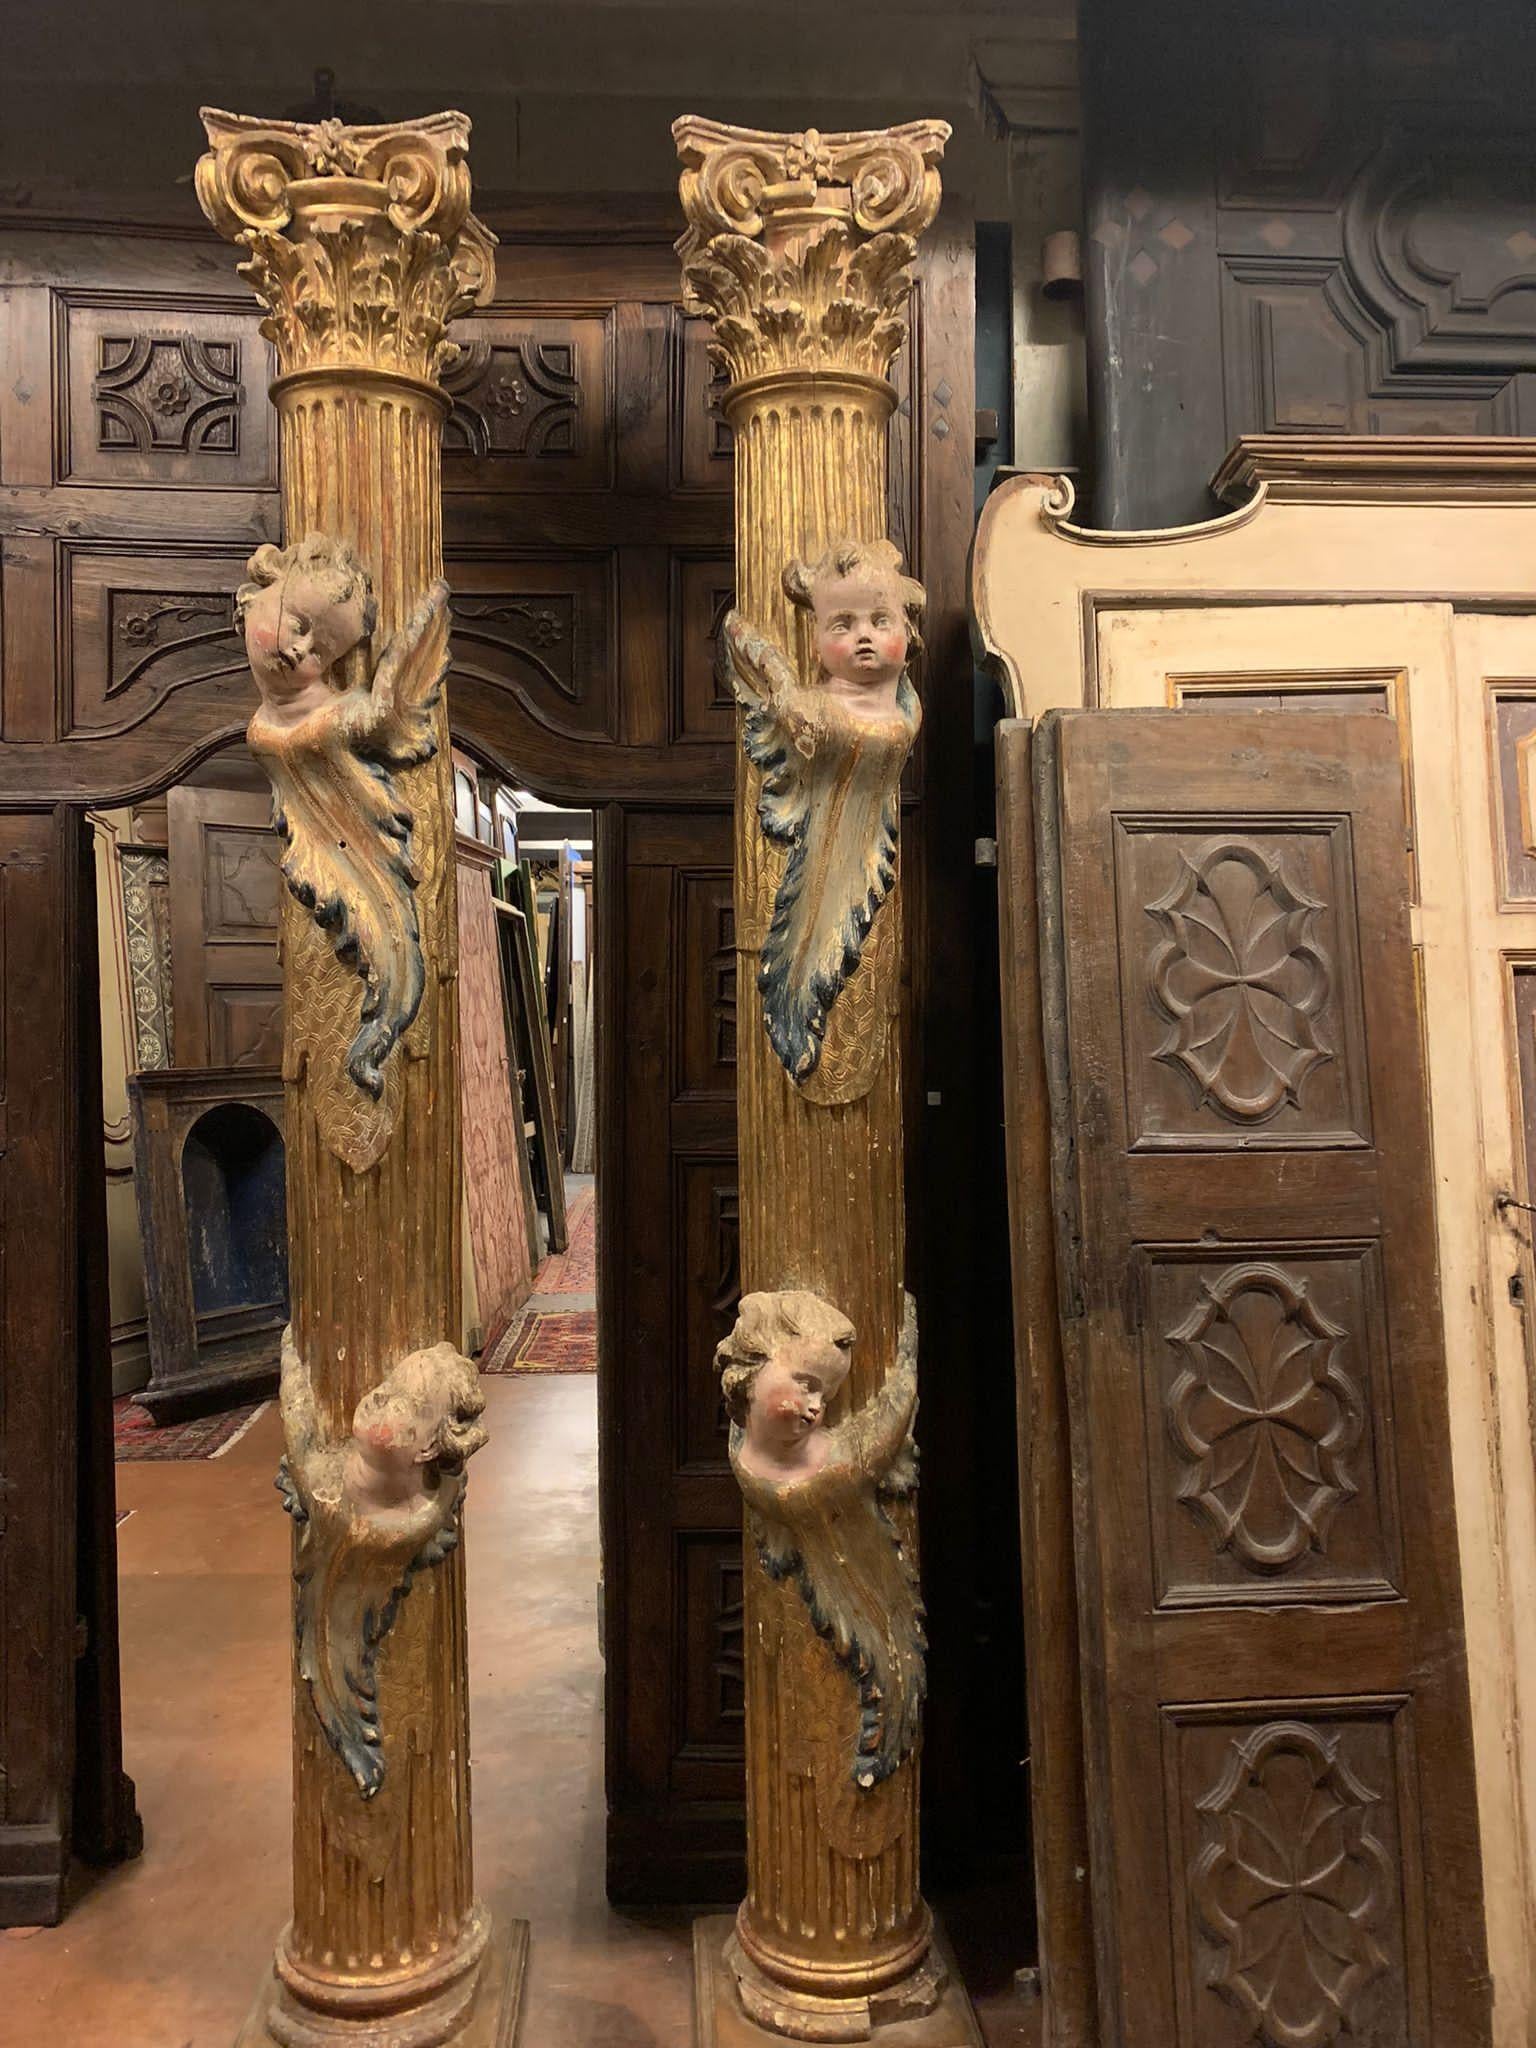 Ancienne paire de colonnes en bois massif, richement sculptées et dorées, enrichies d'angelots polychromes en bandeau, d'un grand âge et fabriquées à la main dans les années 1600, provenant d'une ancienne église en Espagne, mesurant 40 x 40 x H 265